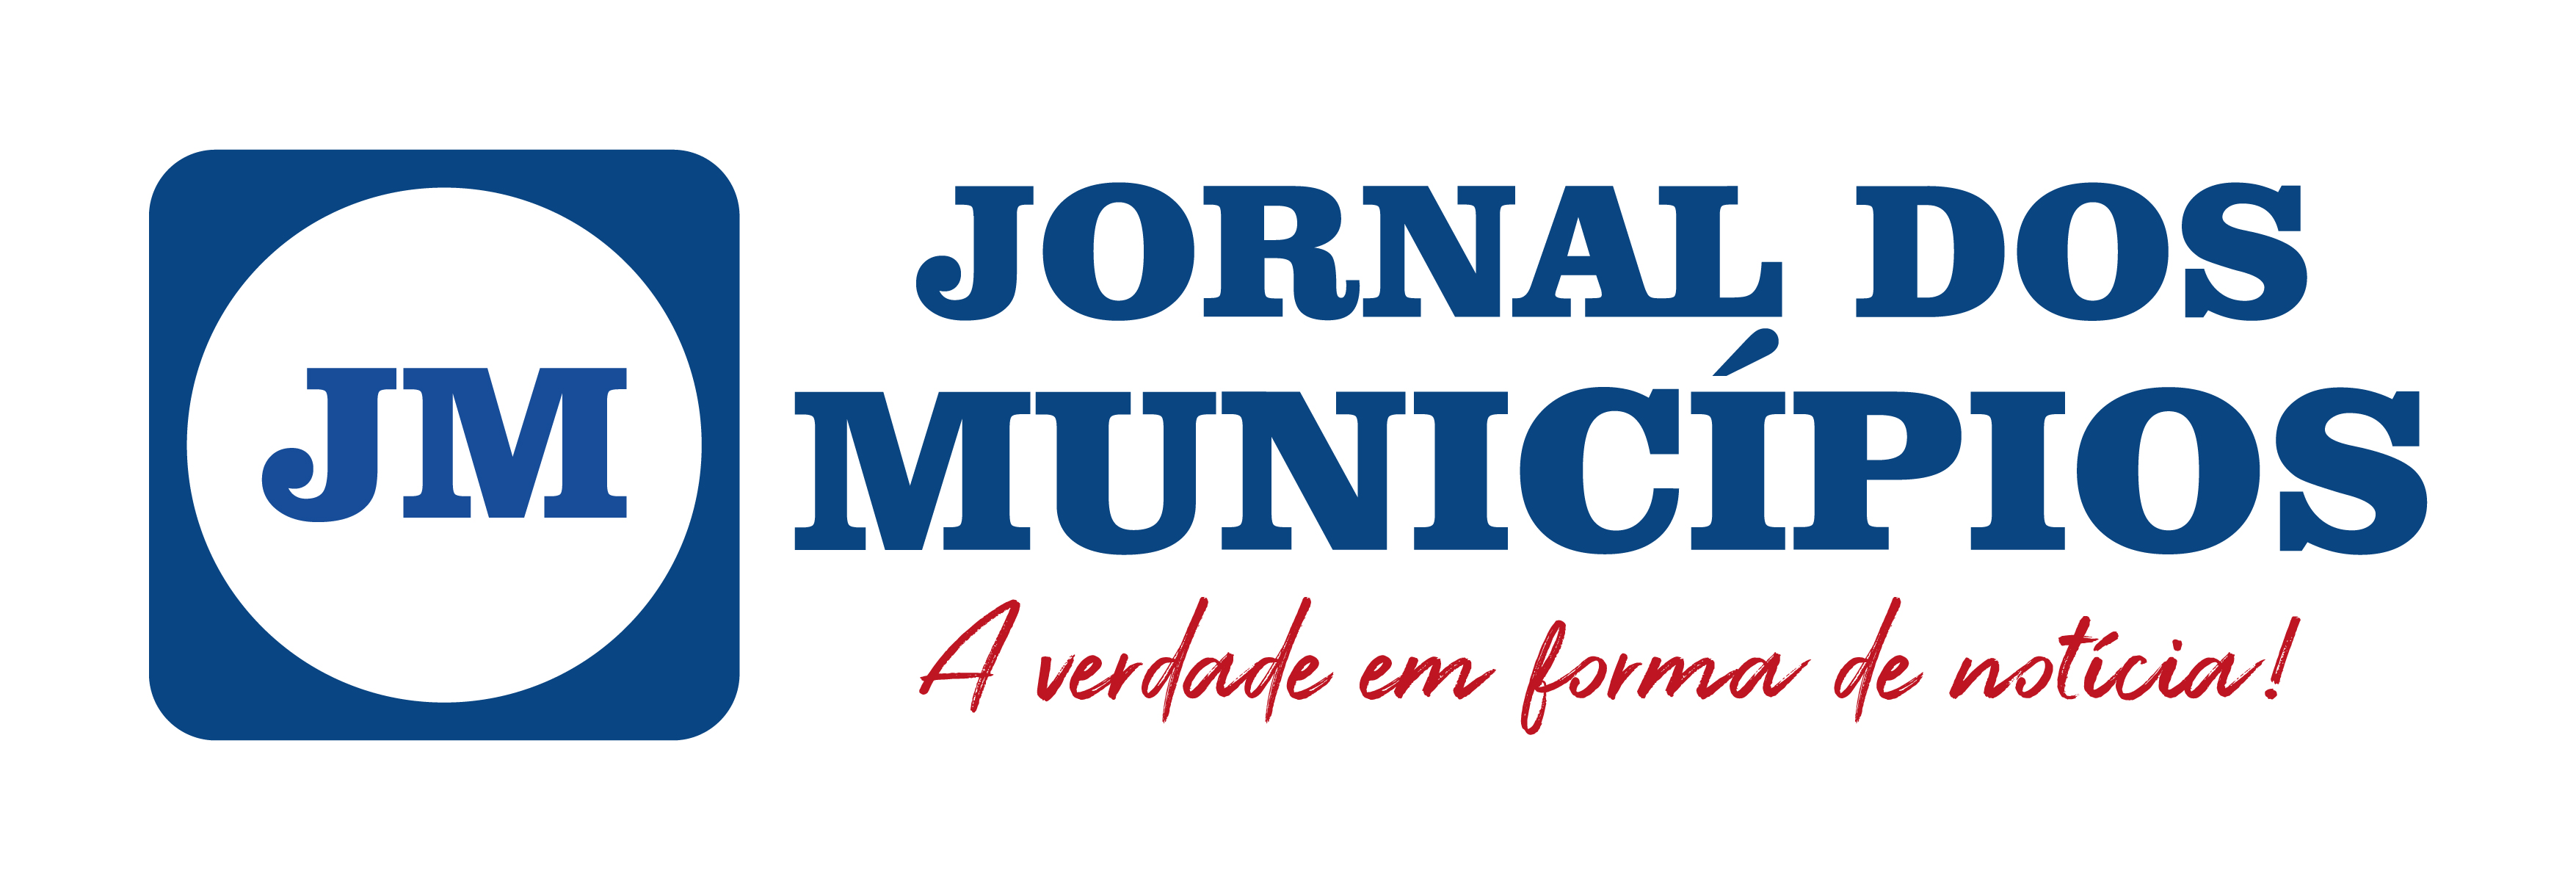 (c) Jornaldosmunicipiosrj.com.br